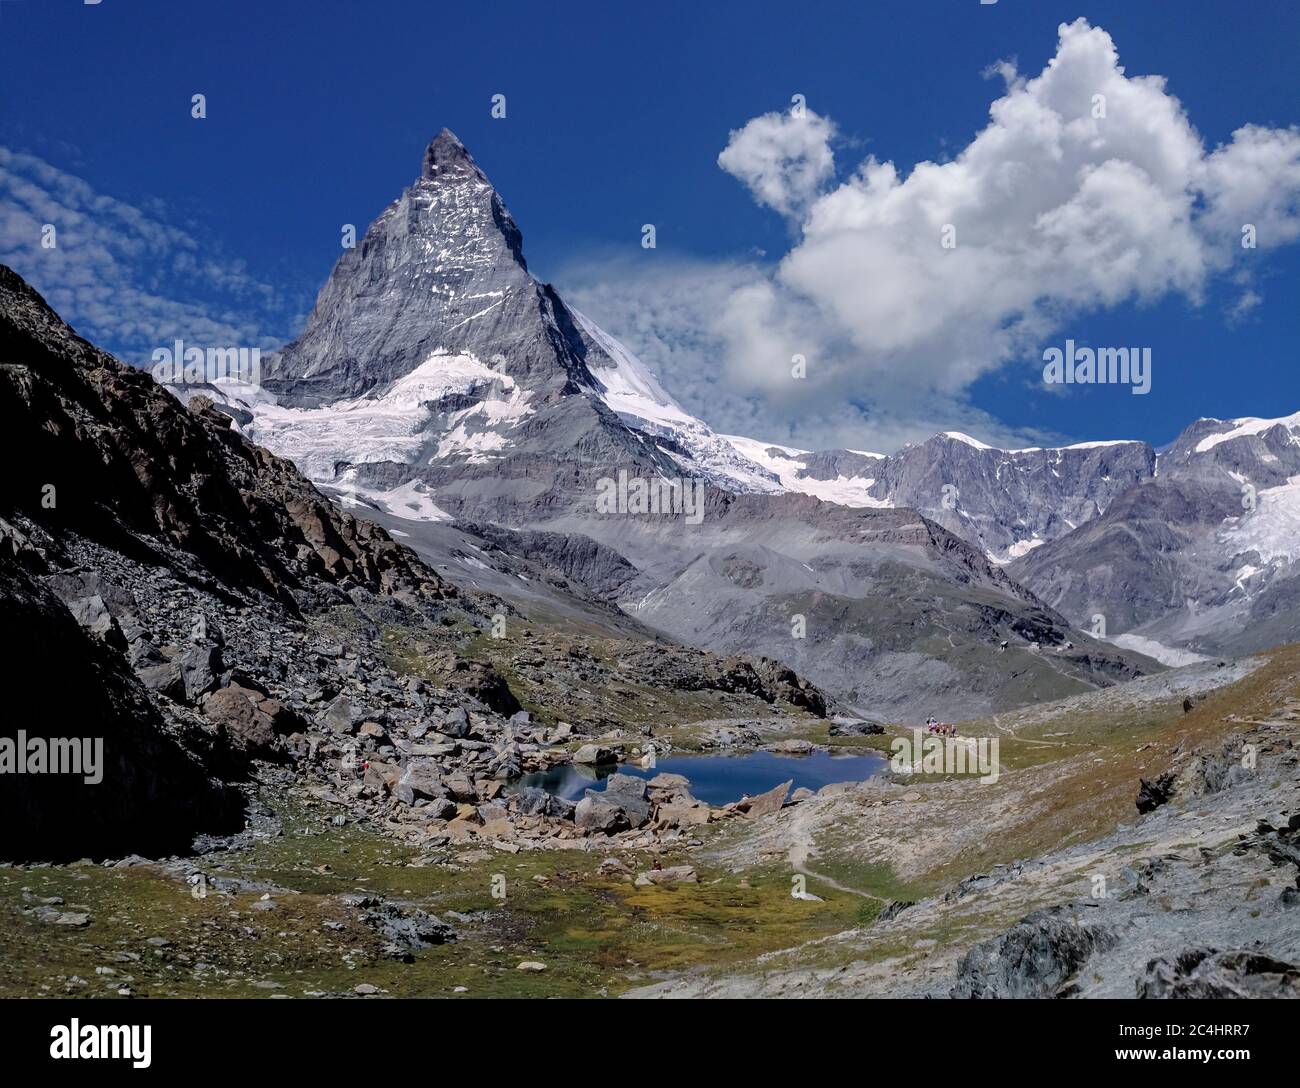 The Matterhorn. Switzerland. (On the way to Raffisee). Stock Photo